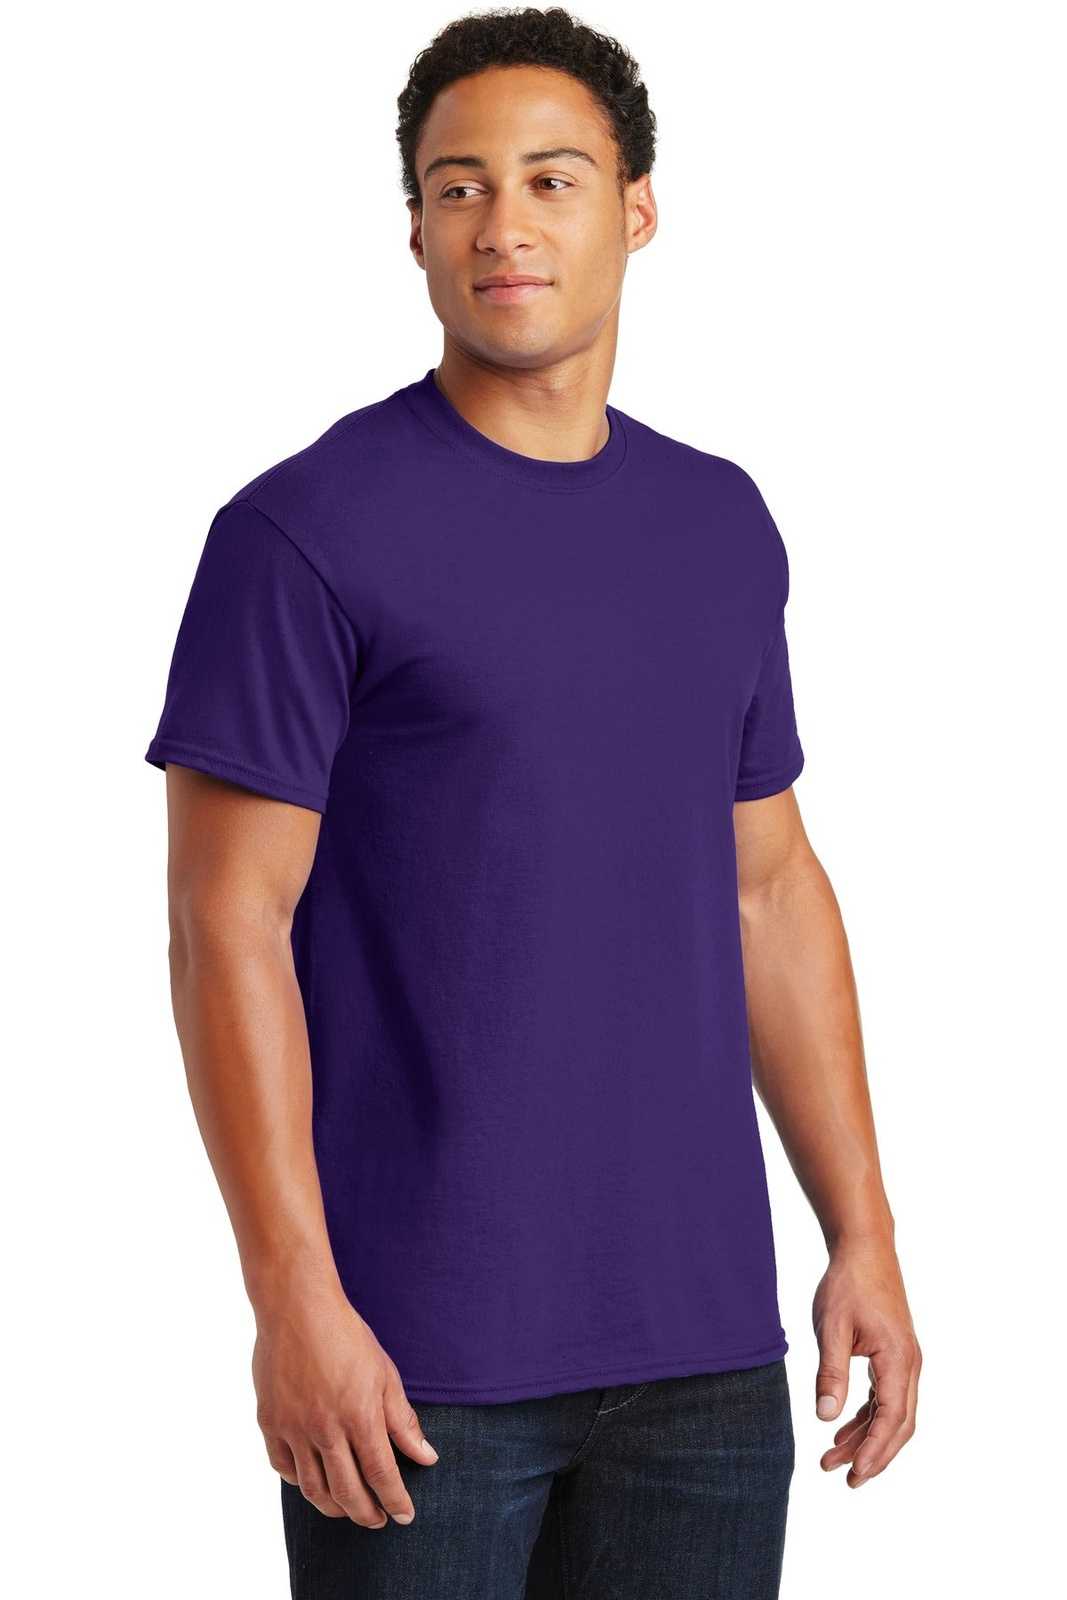 Gildan 2000 Ultra Cotton 100% Cotton T-Shirt - Purple - HIT a Double